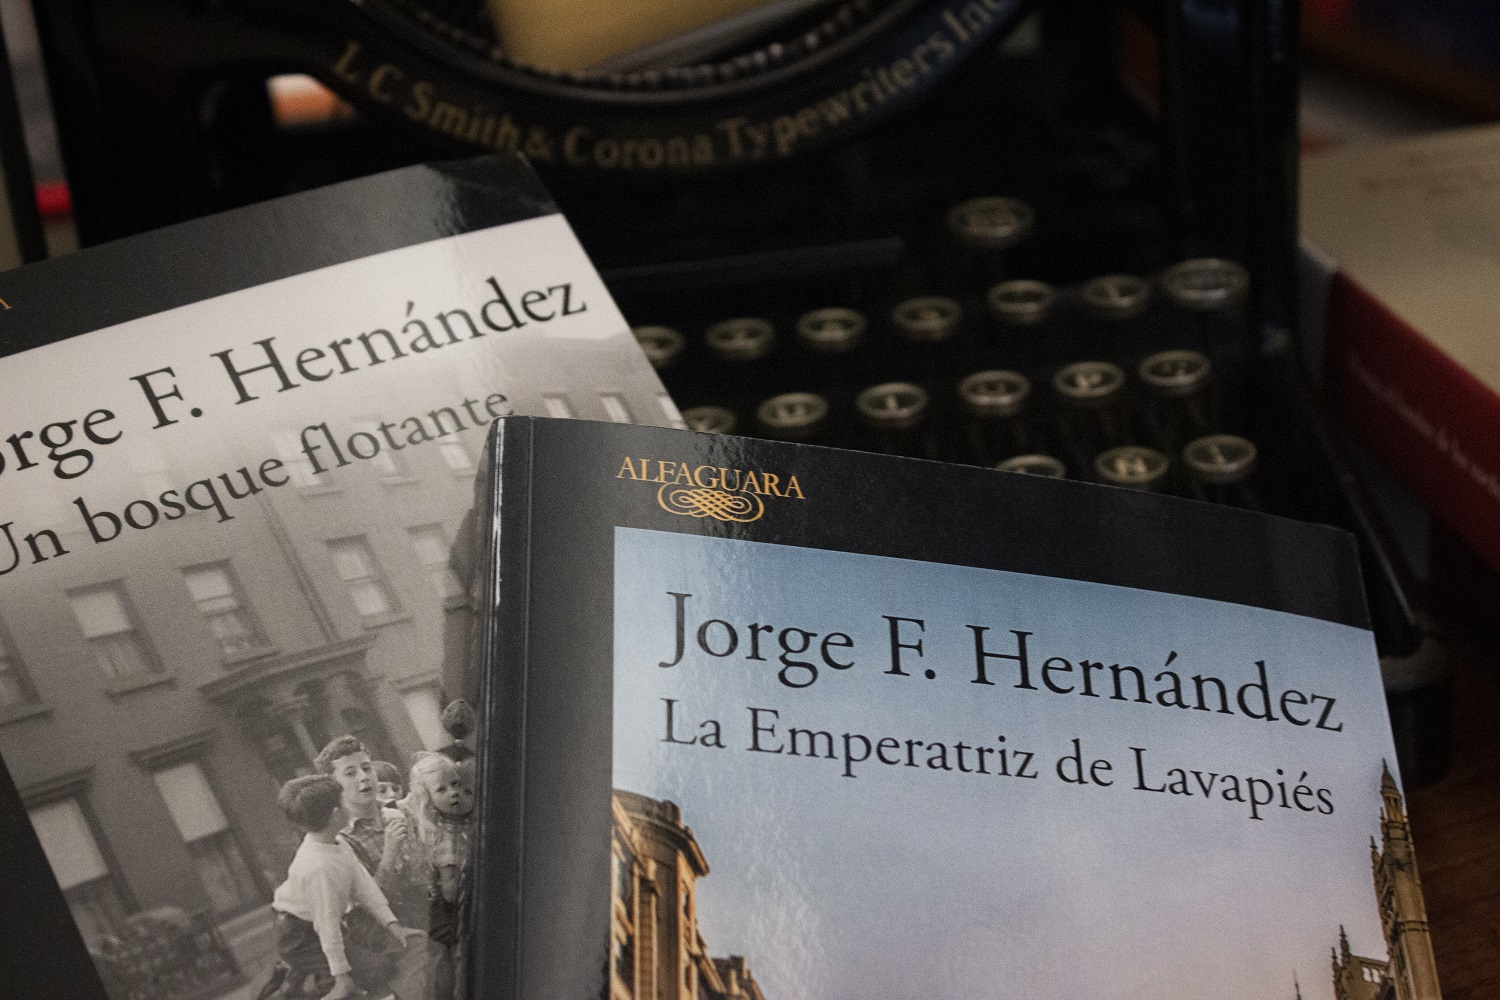 Libros de Jorge F. Hernández en la librería Pérgamo de Madrid. DANIEL VALDIVIESO GÓMEZ